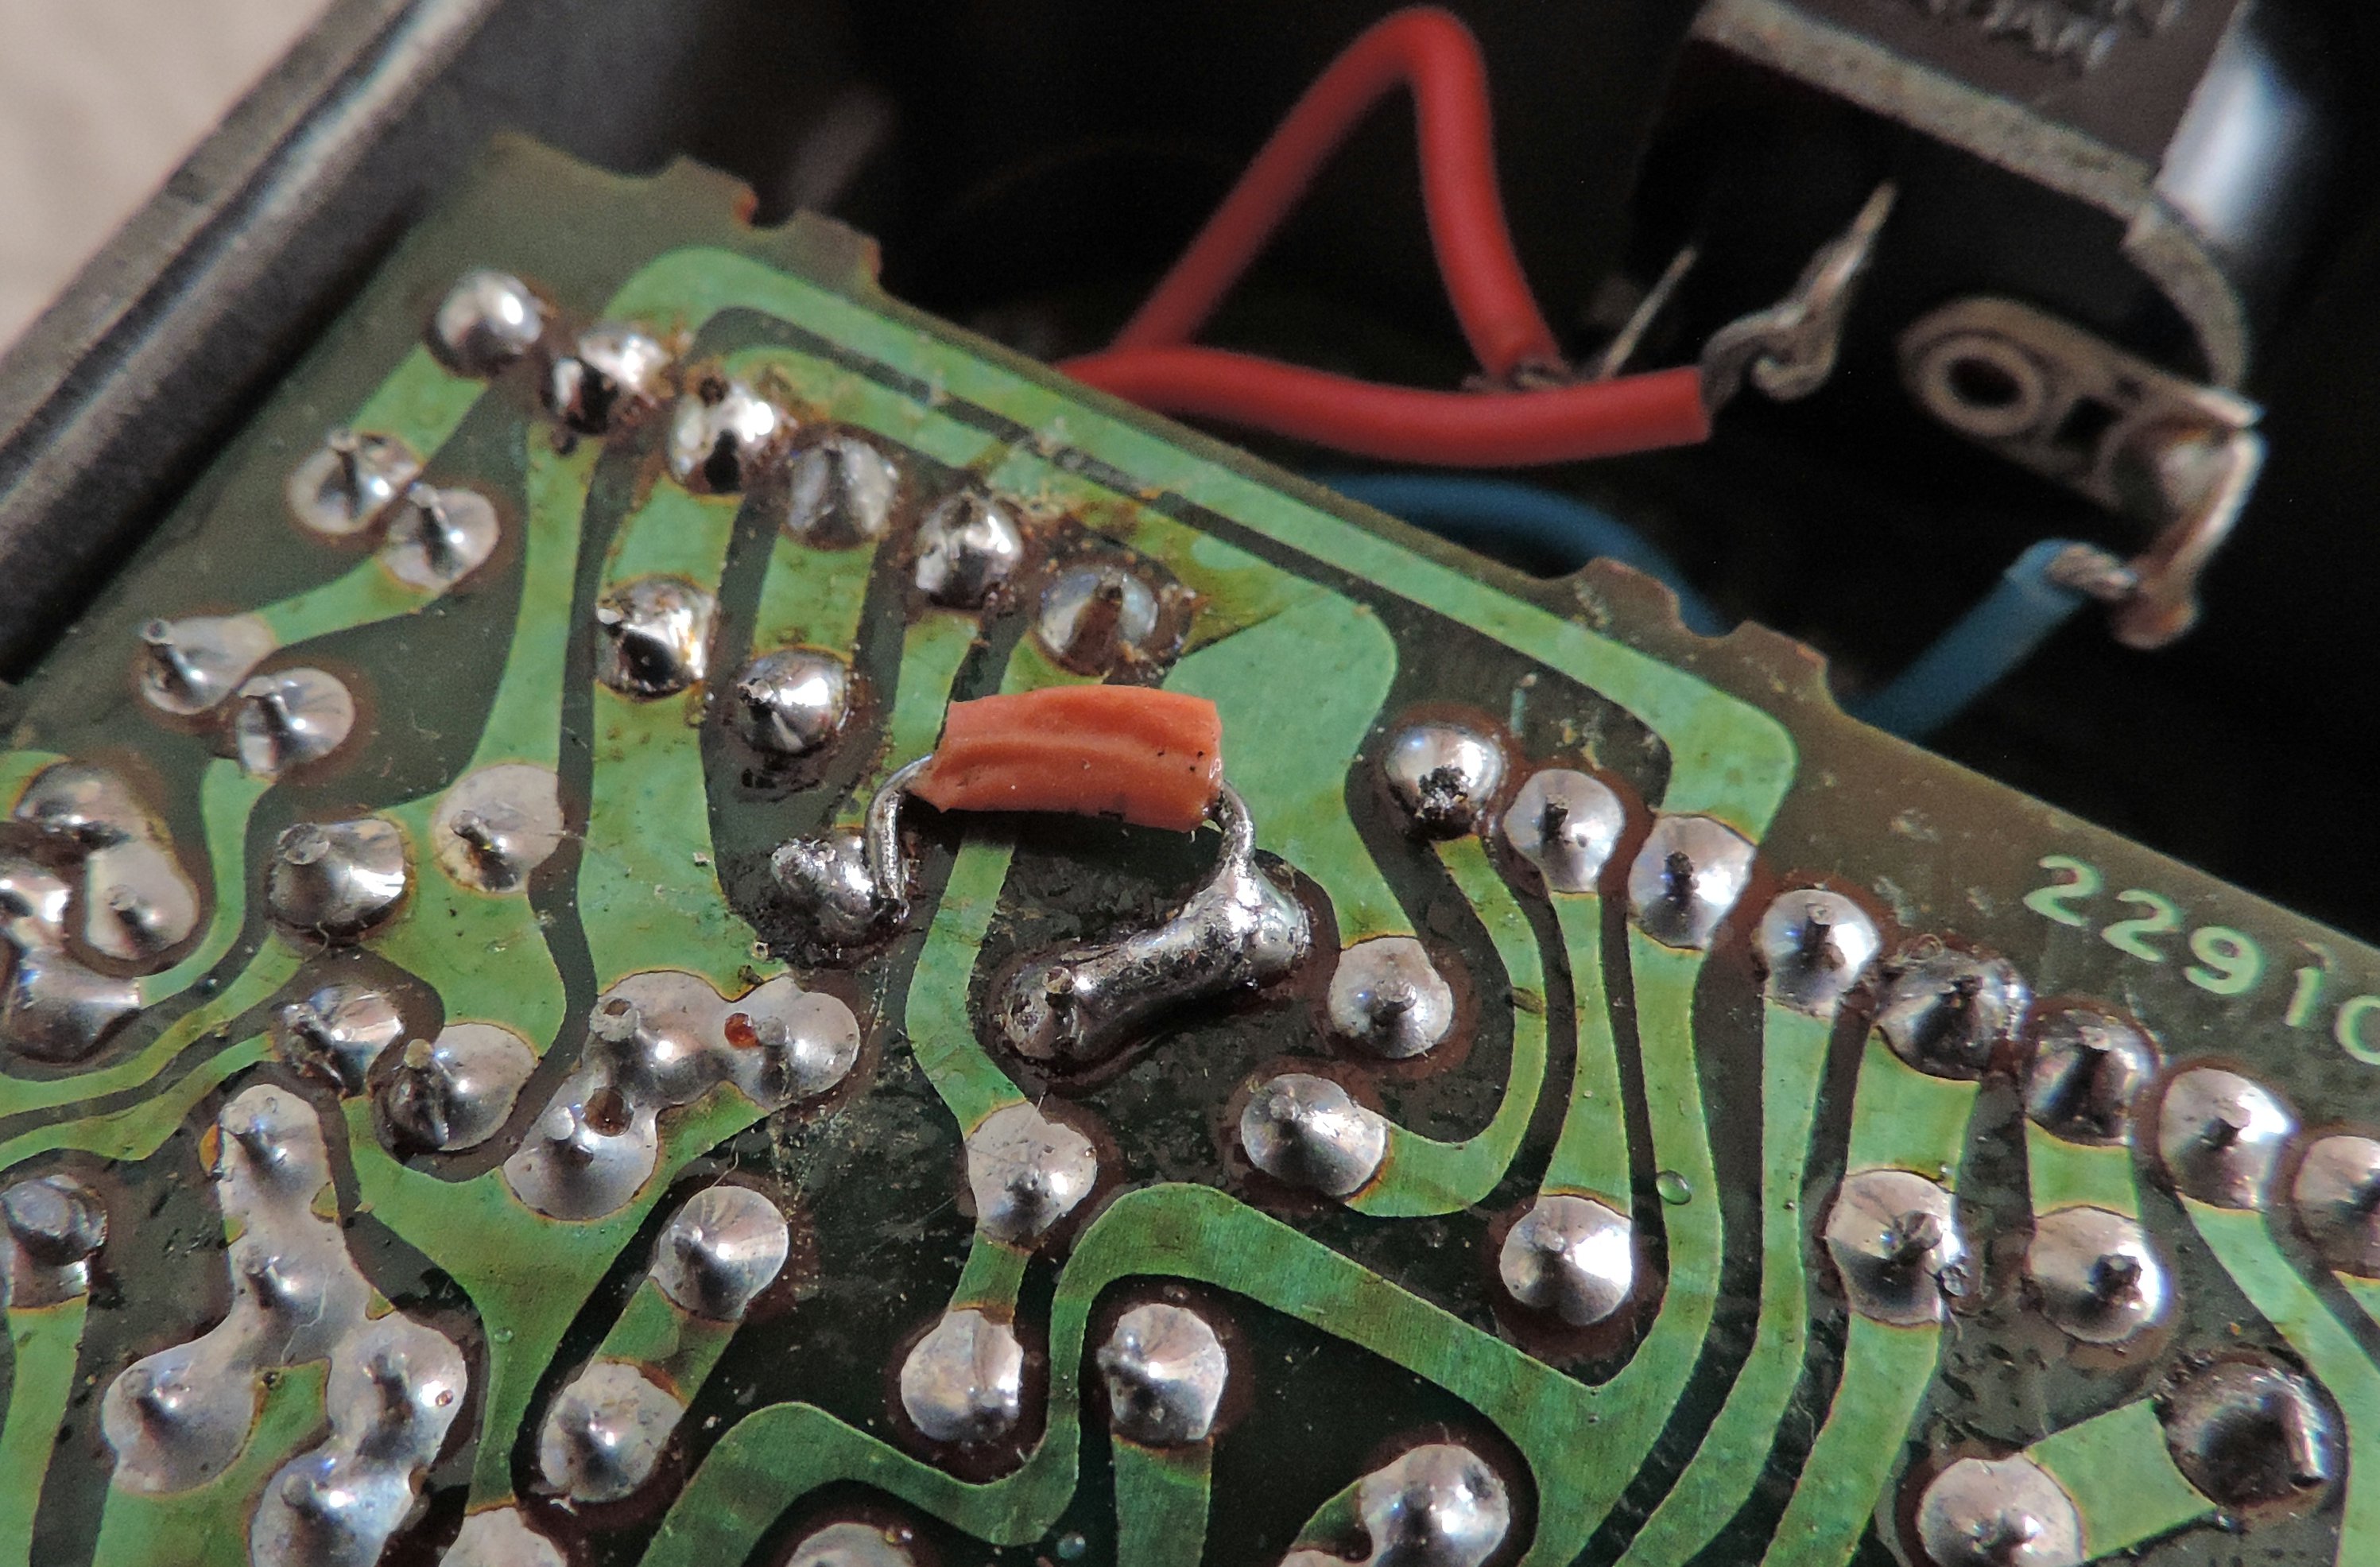 BOSS HM 2 Pedal Jumper Soldered across resistor